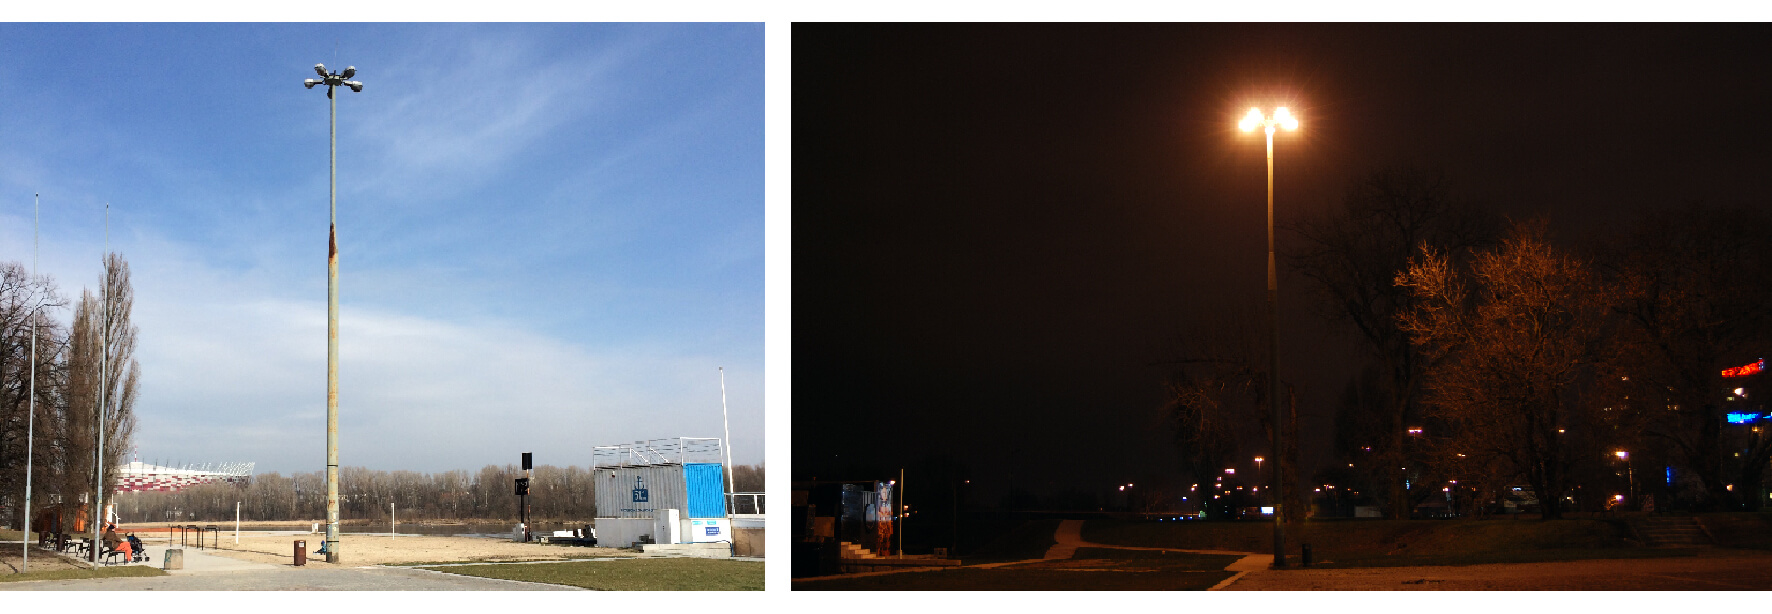 Il. 6: Przykłady oświetlenia stanowiącego element wolnostojący w miejskim wnętrzu krajobrazowym – dzienny (po lewej stronie) i nocny (po prawej stronie) wygląd latarni stojącej na Płycie Desantu w Warszawie (fot. K. Wlazło-Malinowska 13.12.2014). Źródło: opracowanie własne.